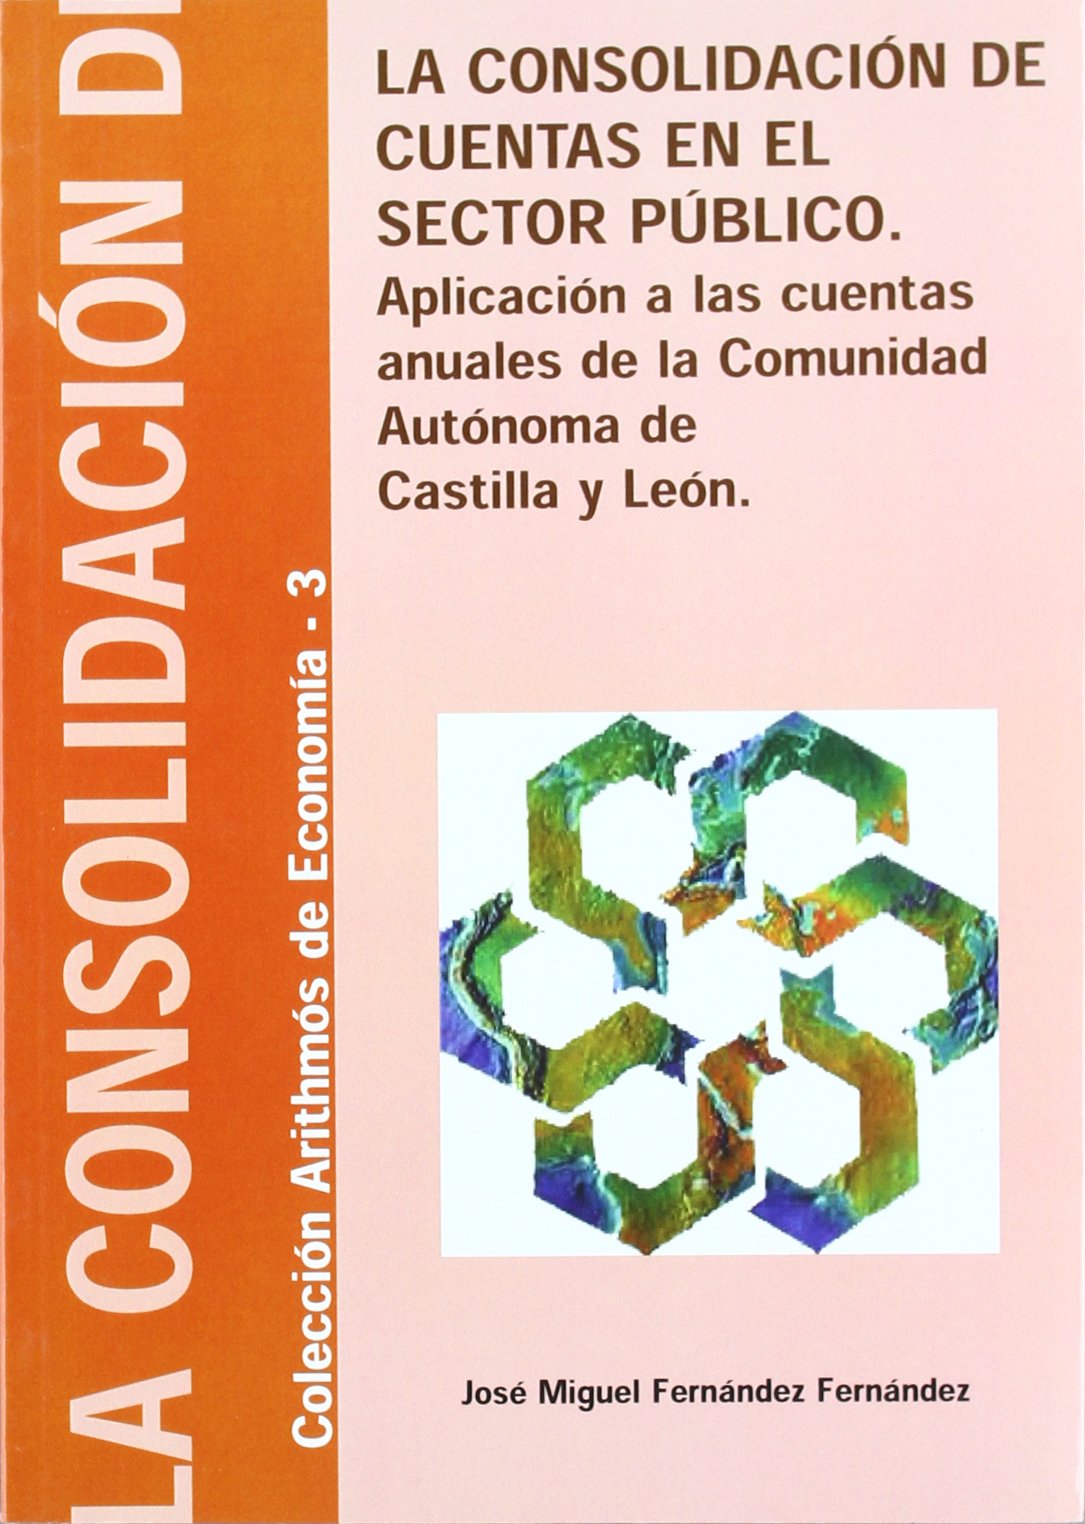 Imagen de portada del libro La consolidación de cuentas en el sector público: aplicación a las cuentas anuales de la Comunidad Autónoma de Castilla y León